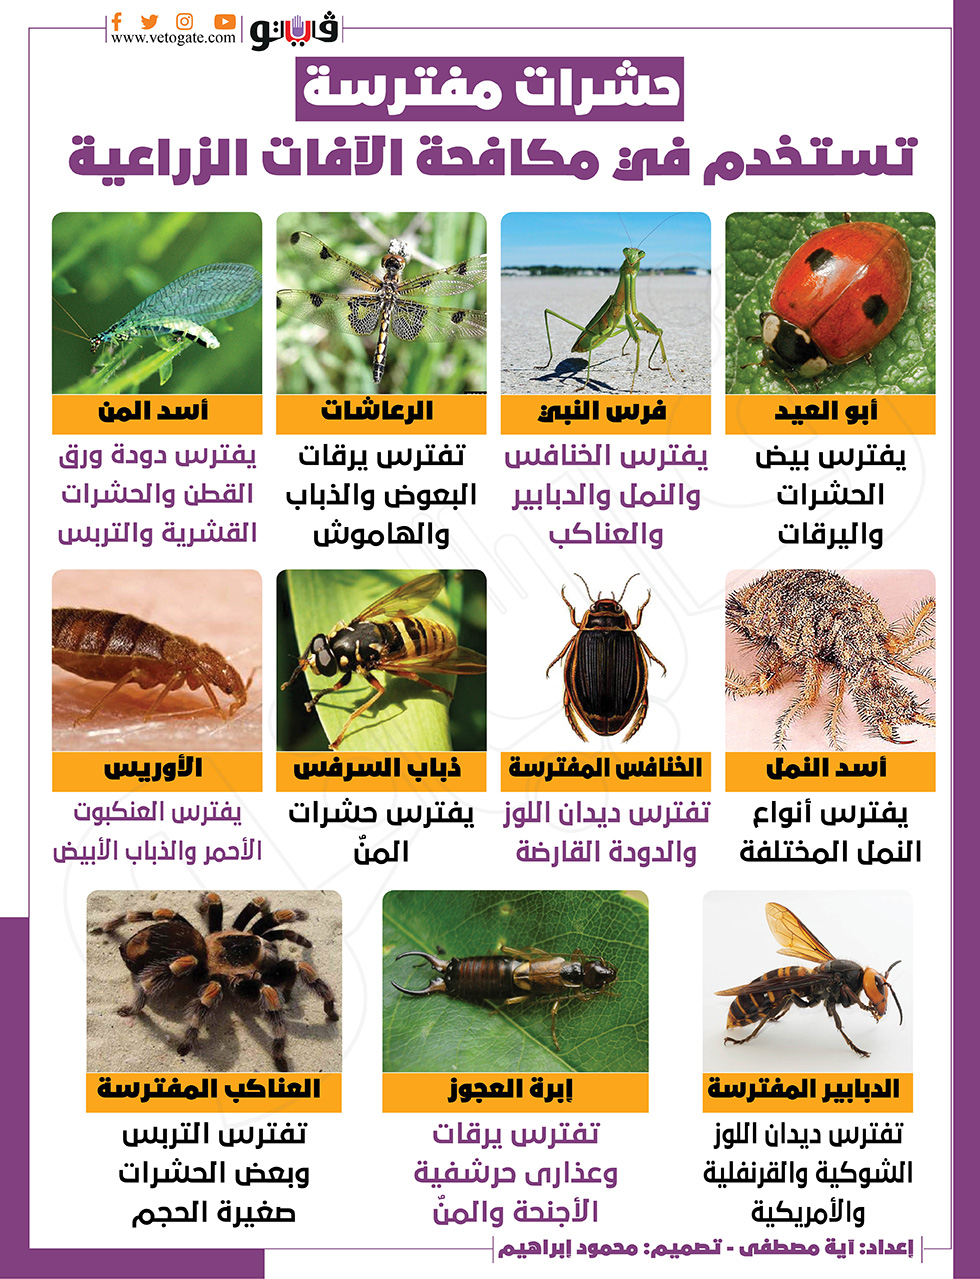 حشرات مفترسة تستخدم في مكافحة الآفات الزراعية | إنفوجراف